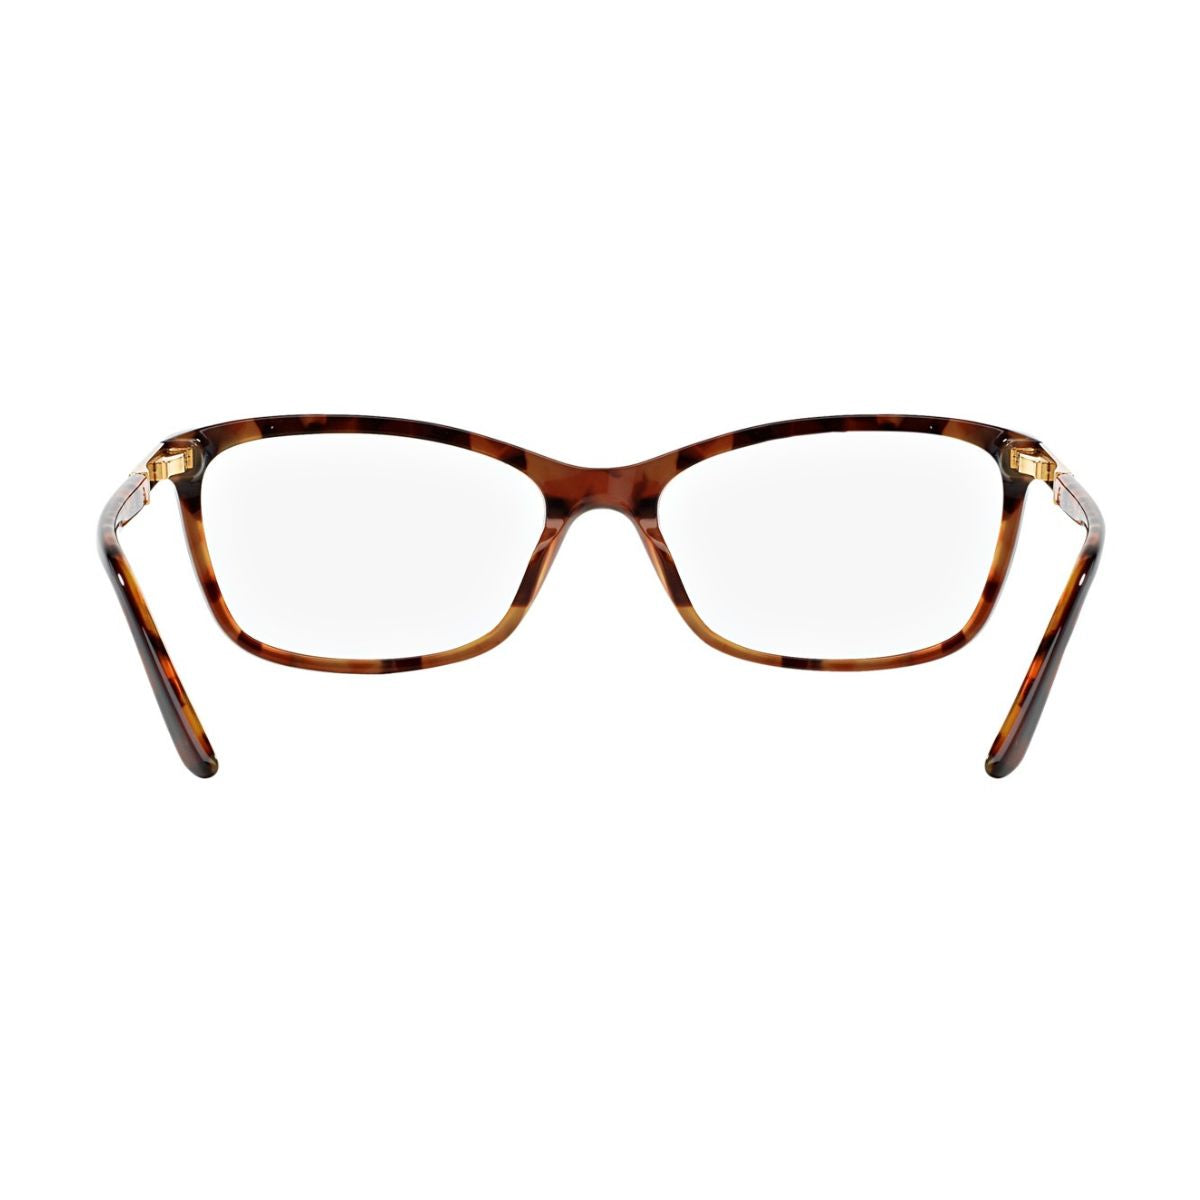 "Versace 3186 5077 eyesight glasses frame for women's online at optorium"